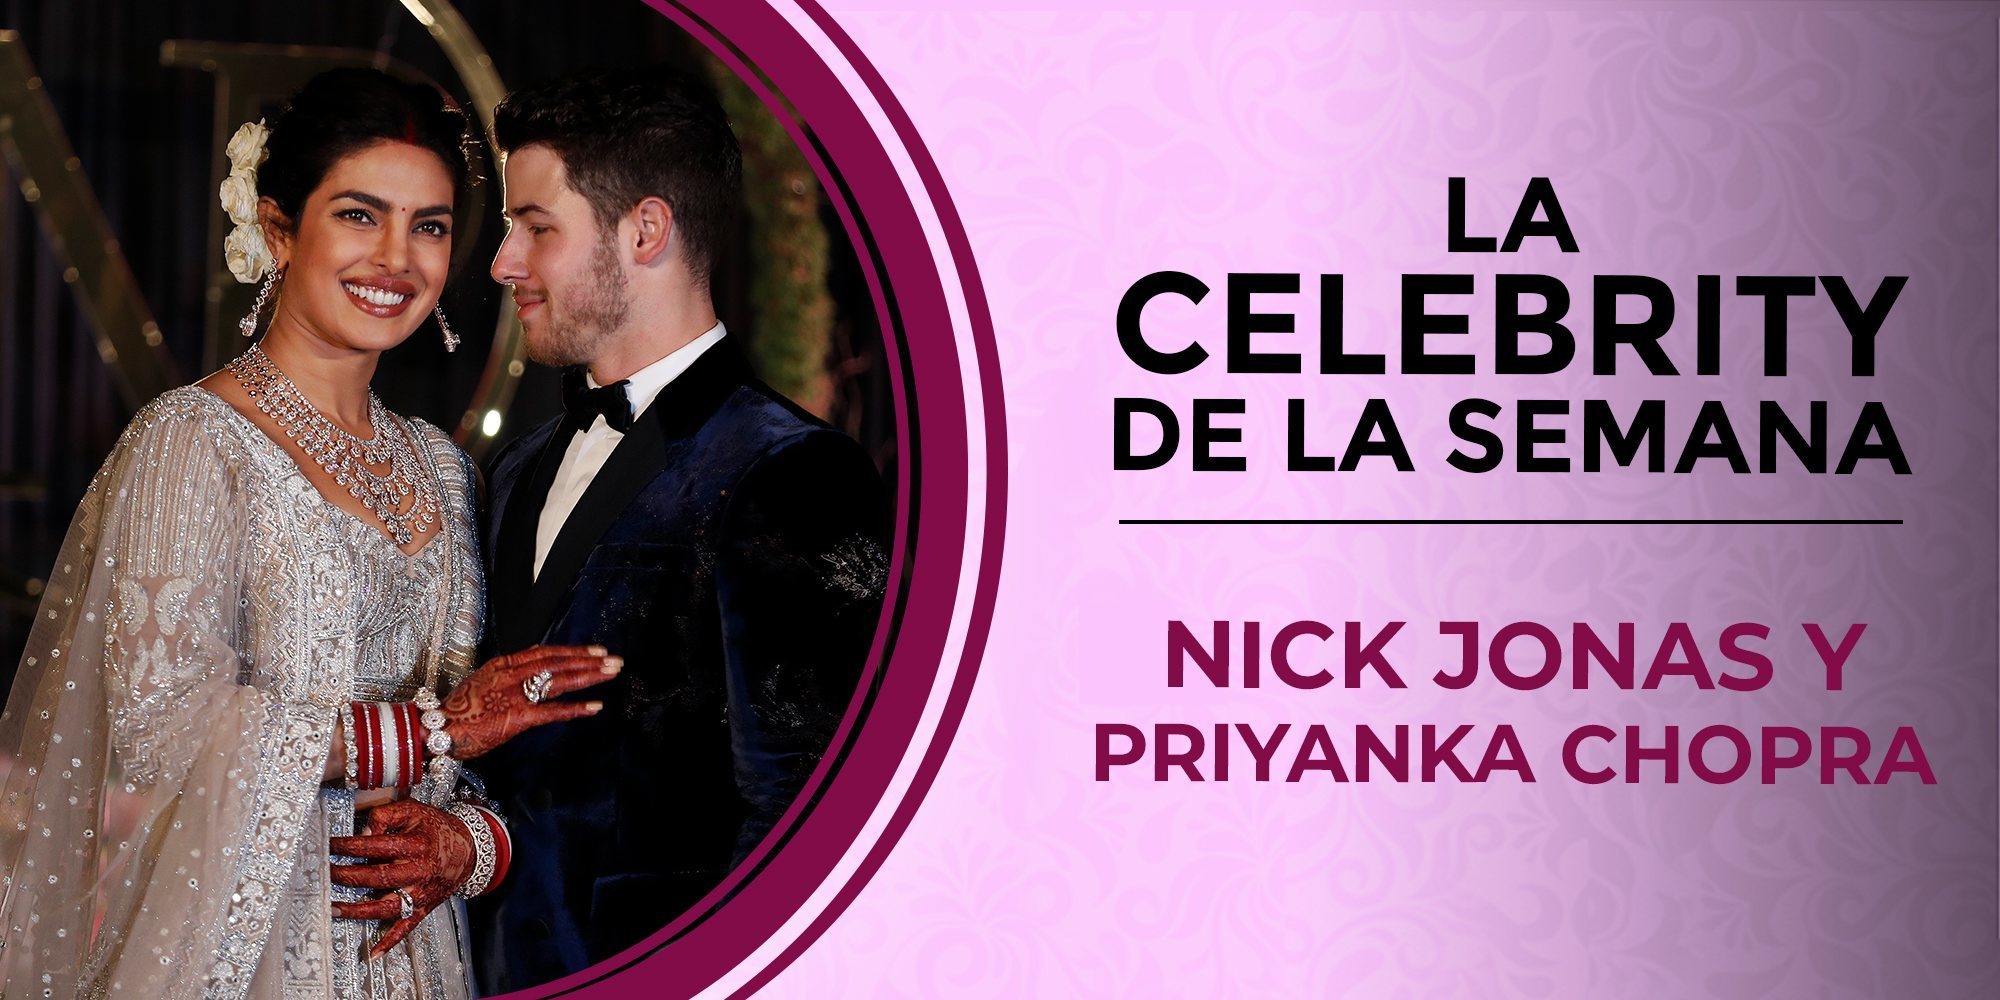 Nick Jonas y Priyanka Chopra, las celebrities de la semana por su extravagante y romántica boda